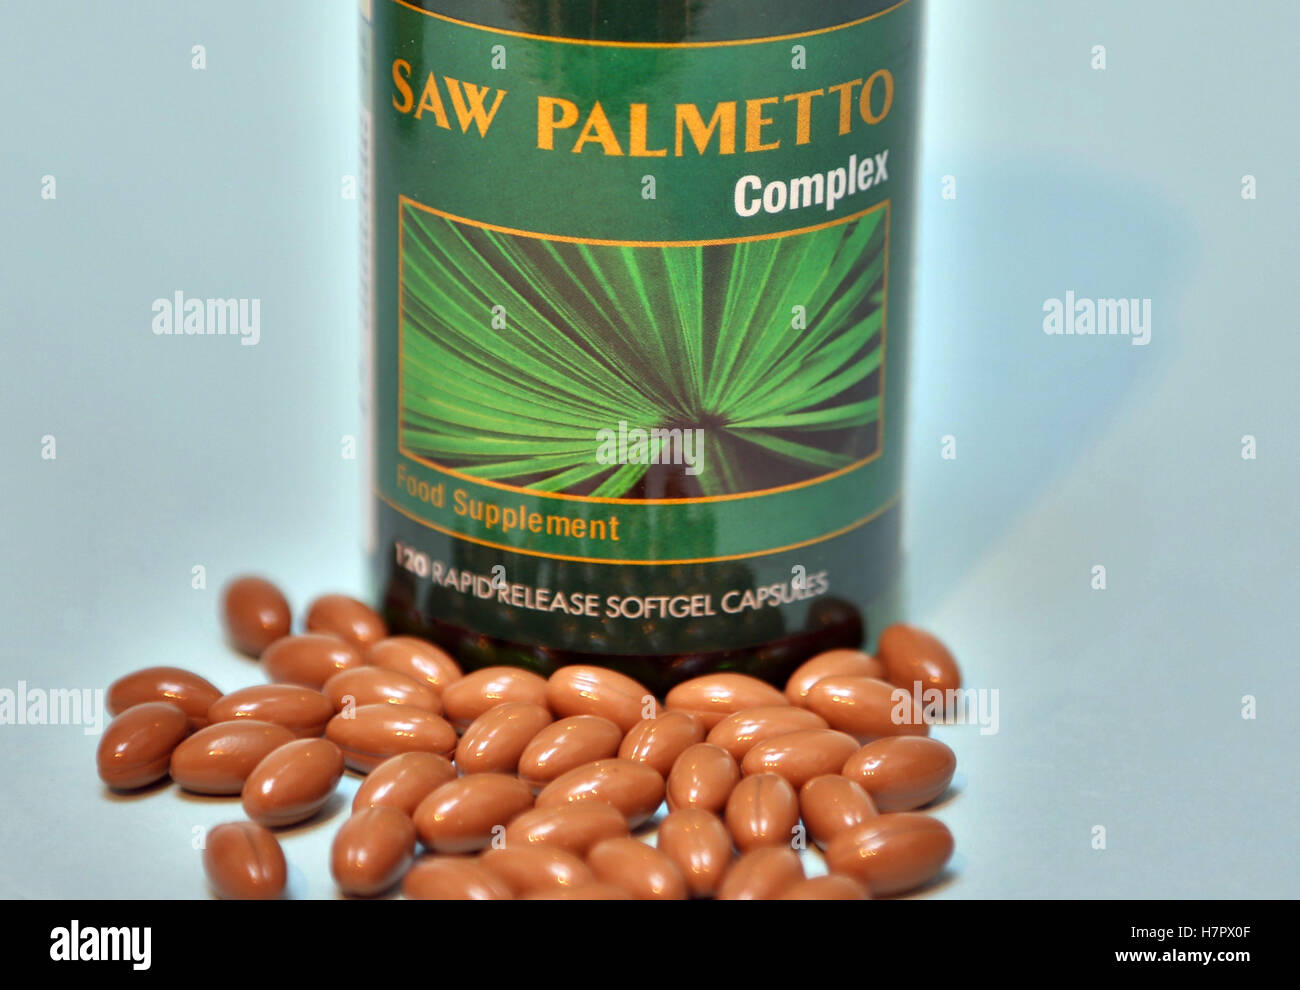 Saw palmetto integratore alimentare capsule, Londra Foto Stock